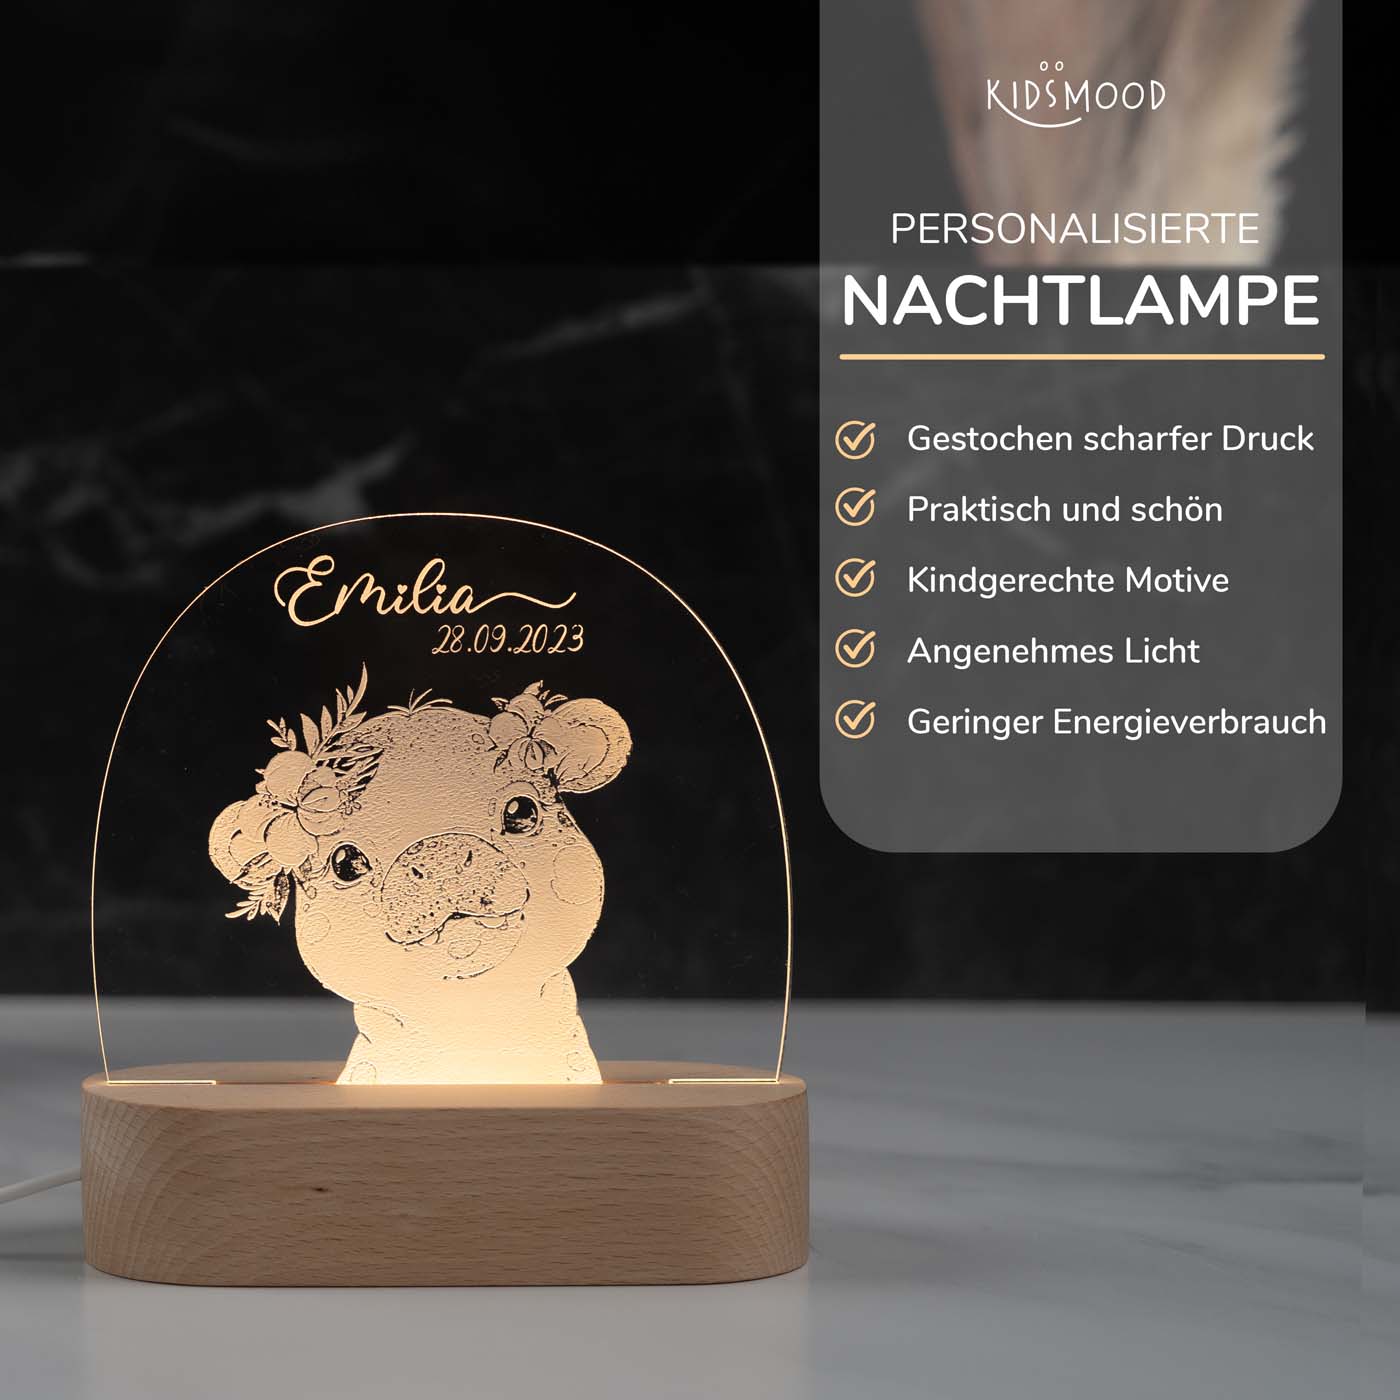 Personalisierte Nachtlampe für Kinder - Nilpferd - Name und Geburtsdatum